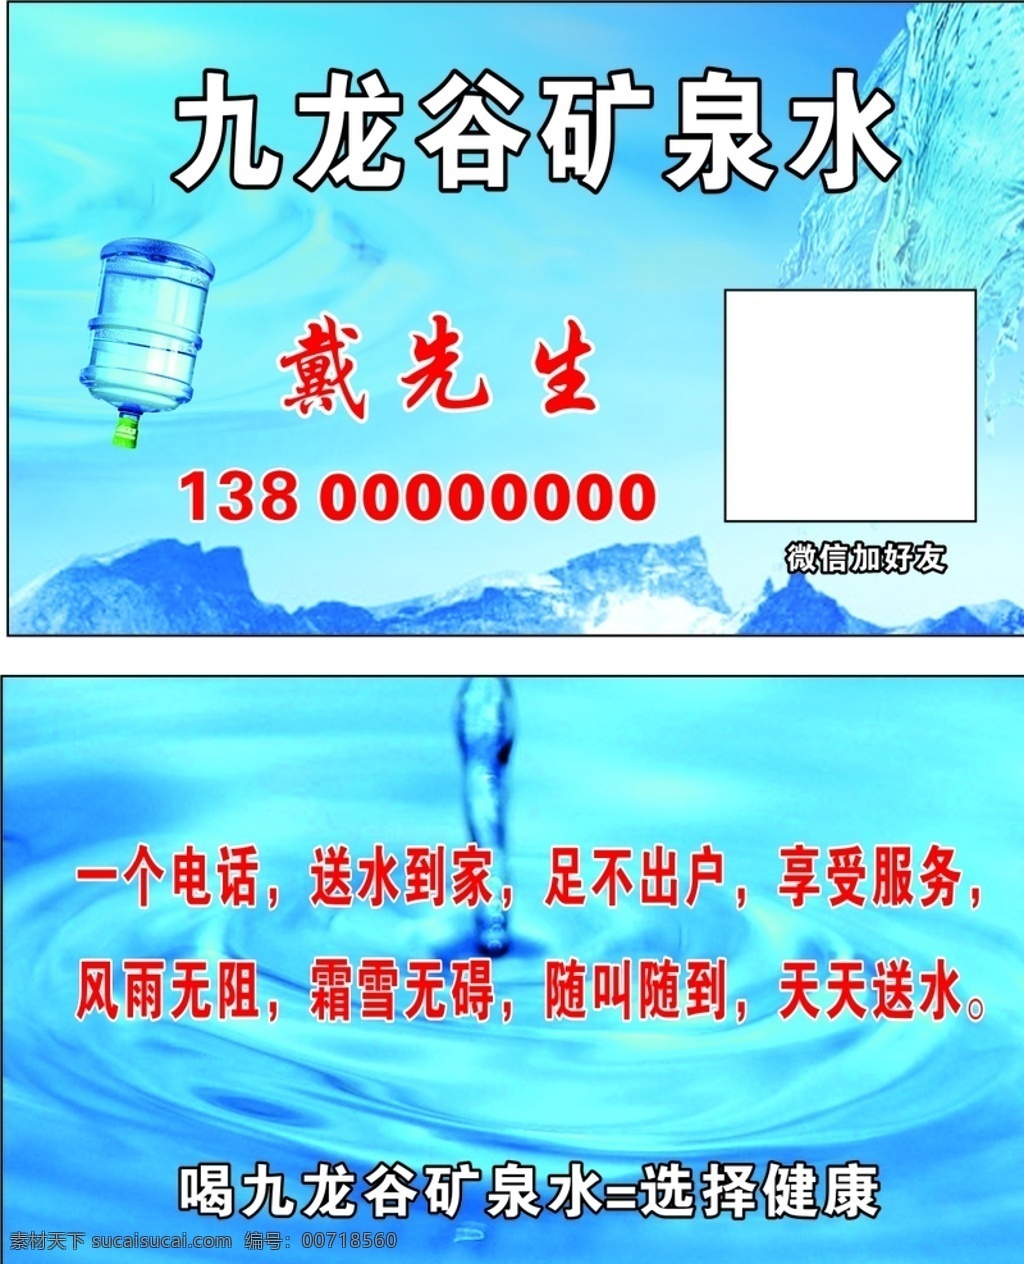 九龙 谷 矿泉水 名片 九龙谷 健康水 桶装水 名片卡片